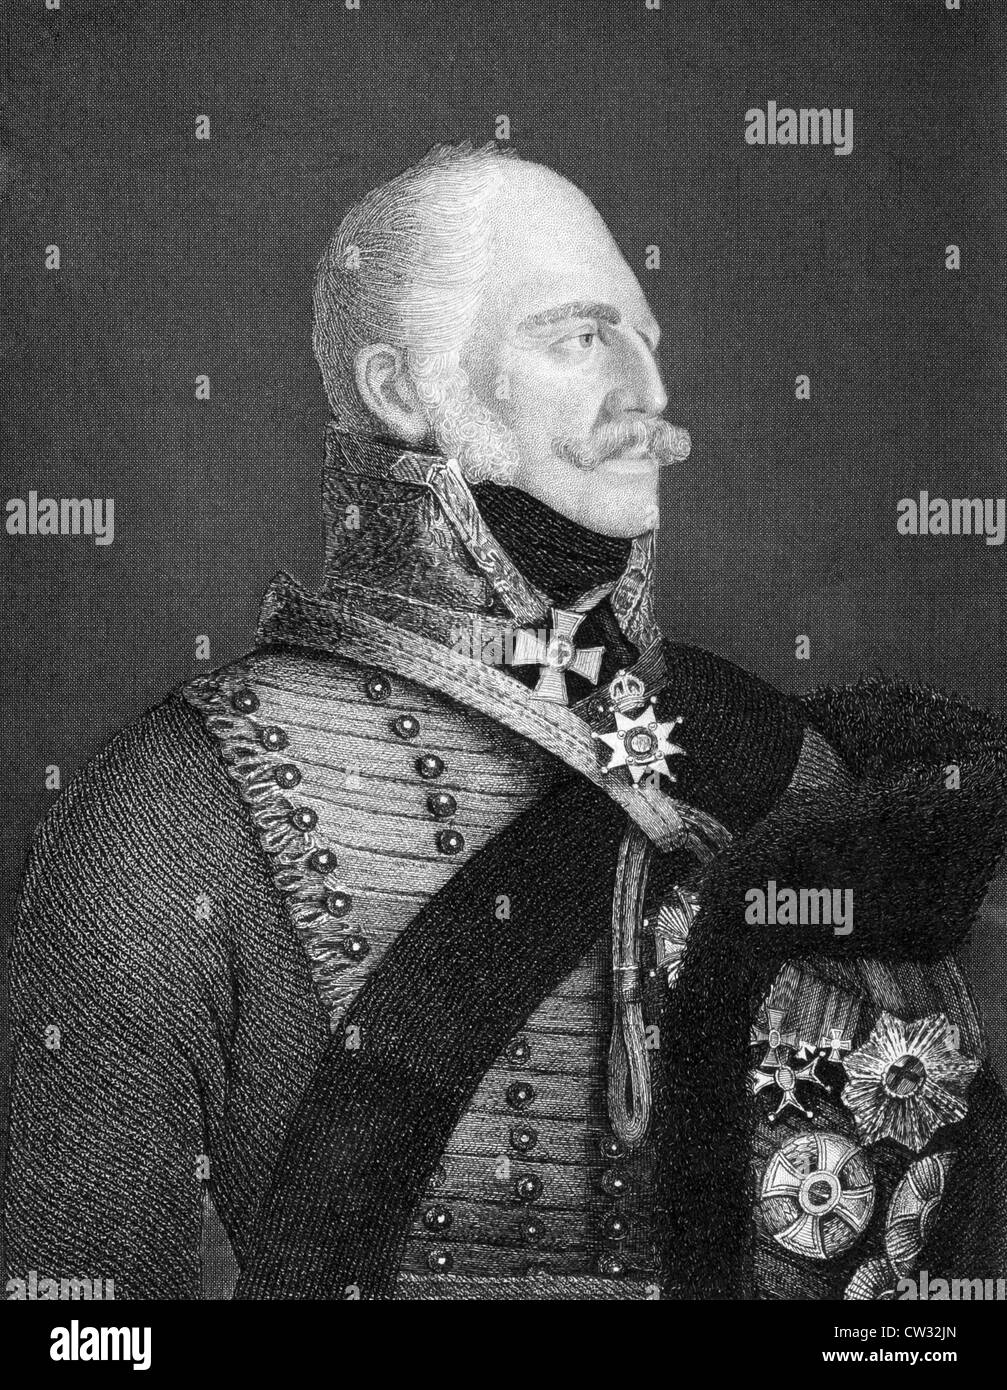 Ernest Augustus I von Hanover (1771-1851) auf Kupferstich aus dem Jahr 1859. König von Hannover im Jahre 1837-1851. Stockfoto